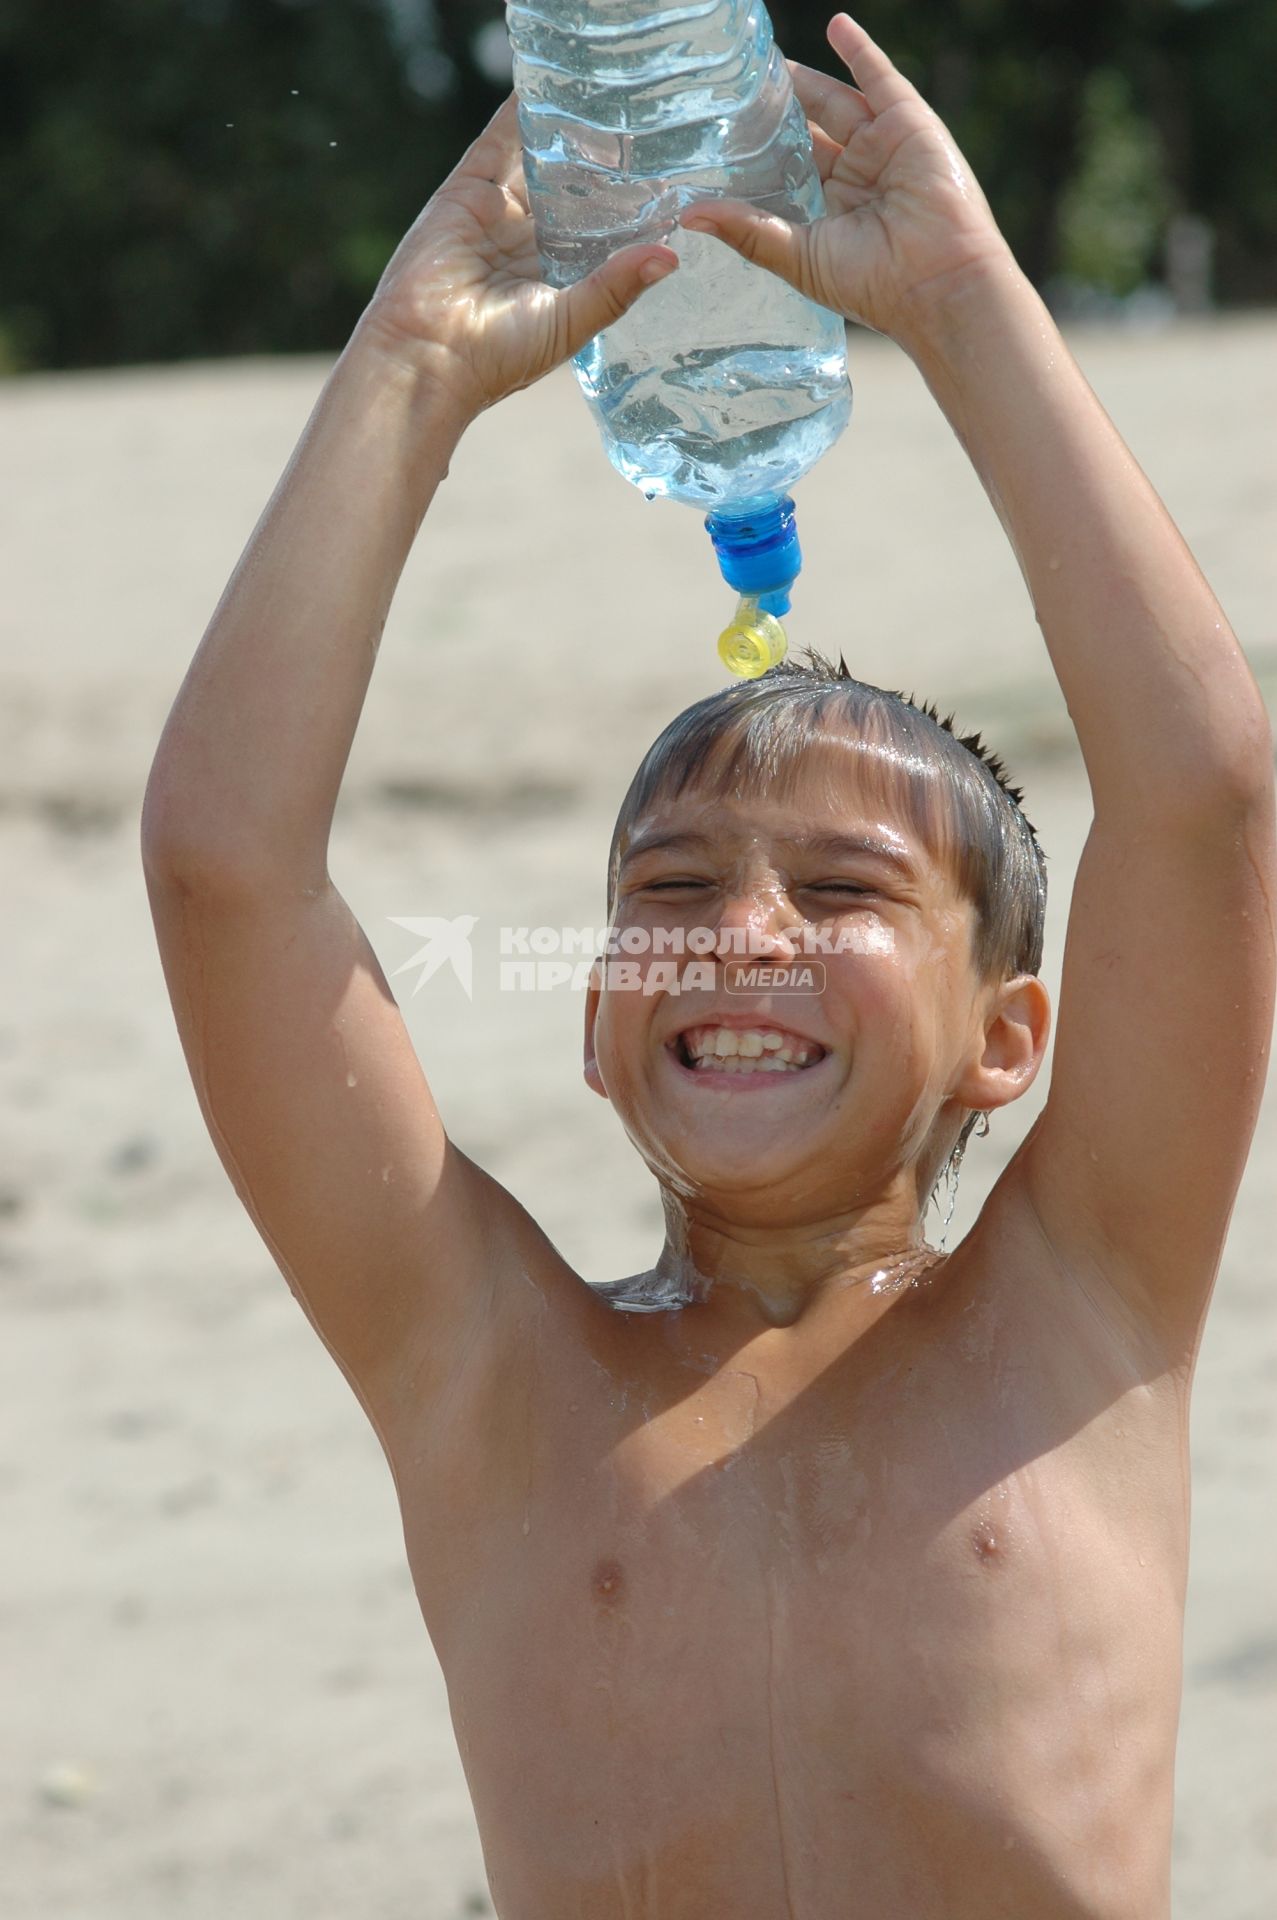 Мальчик поливает себя водой из бутылки.